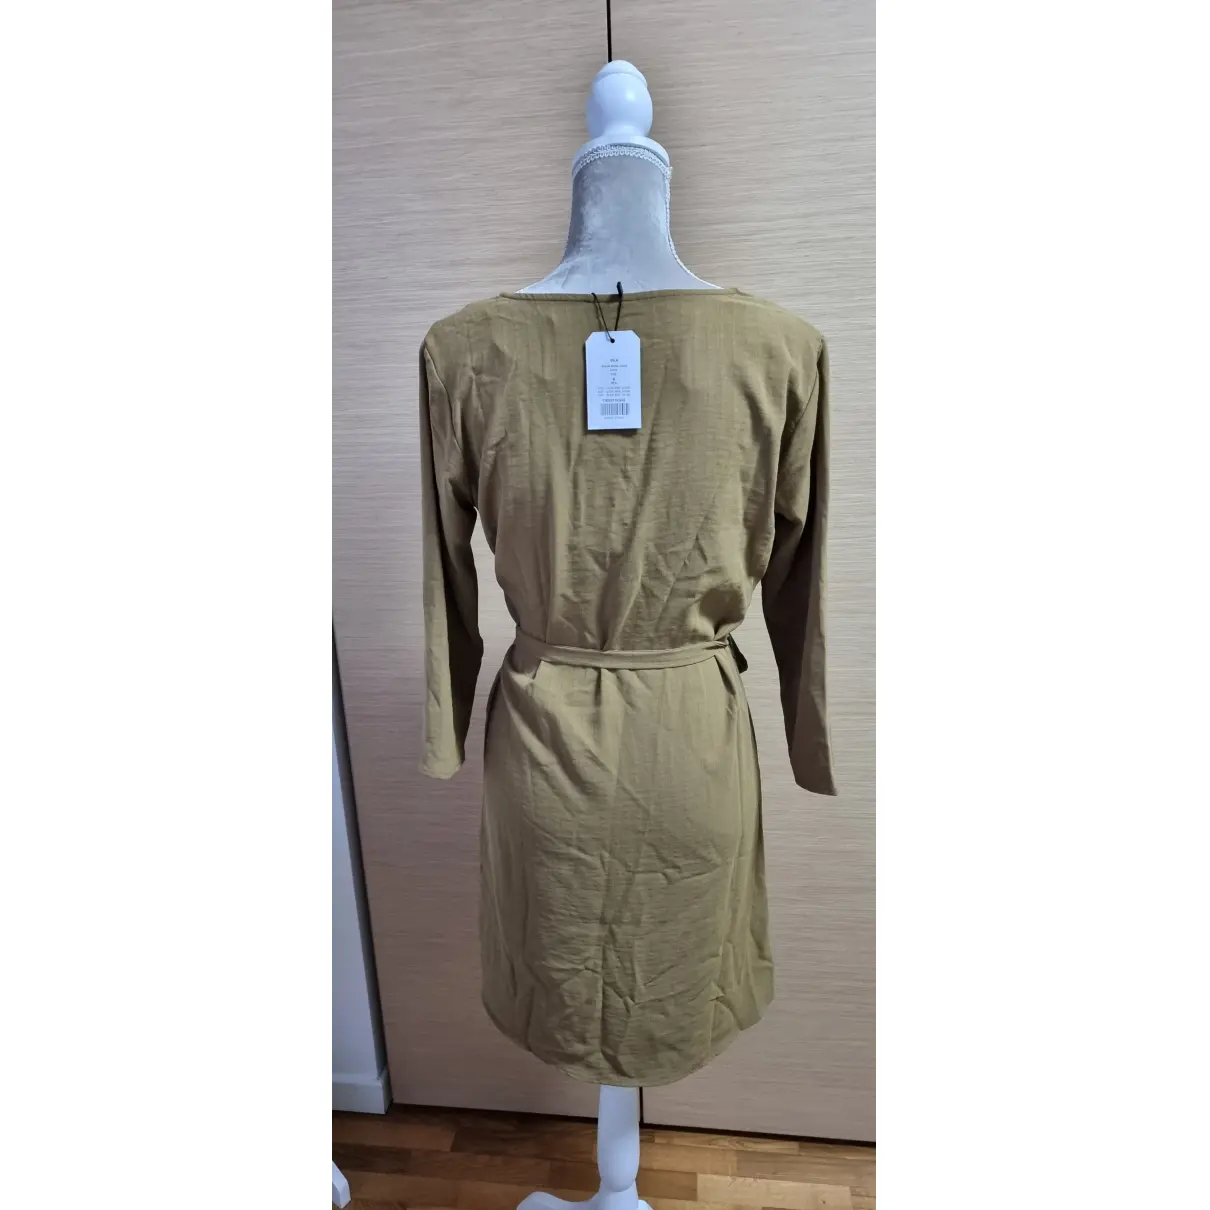 Buy VILA Mid-length dress online